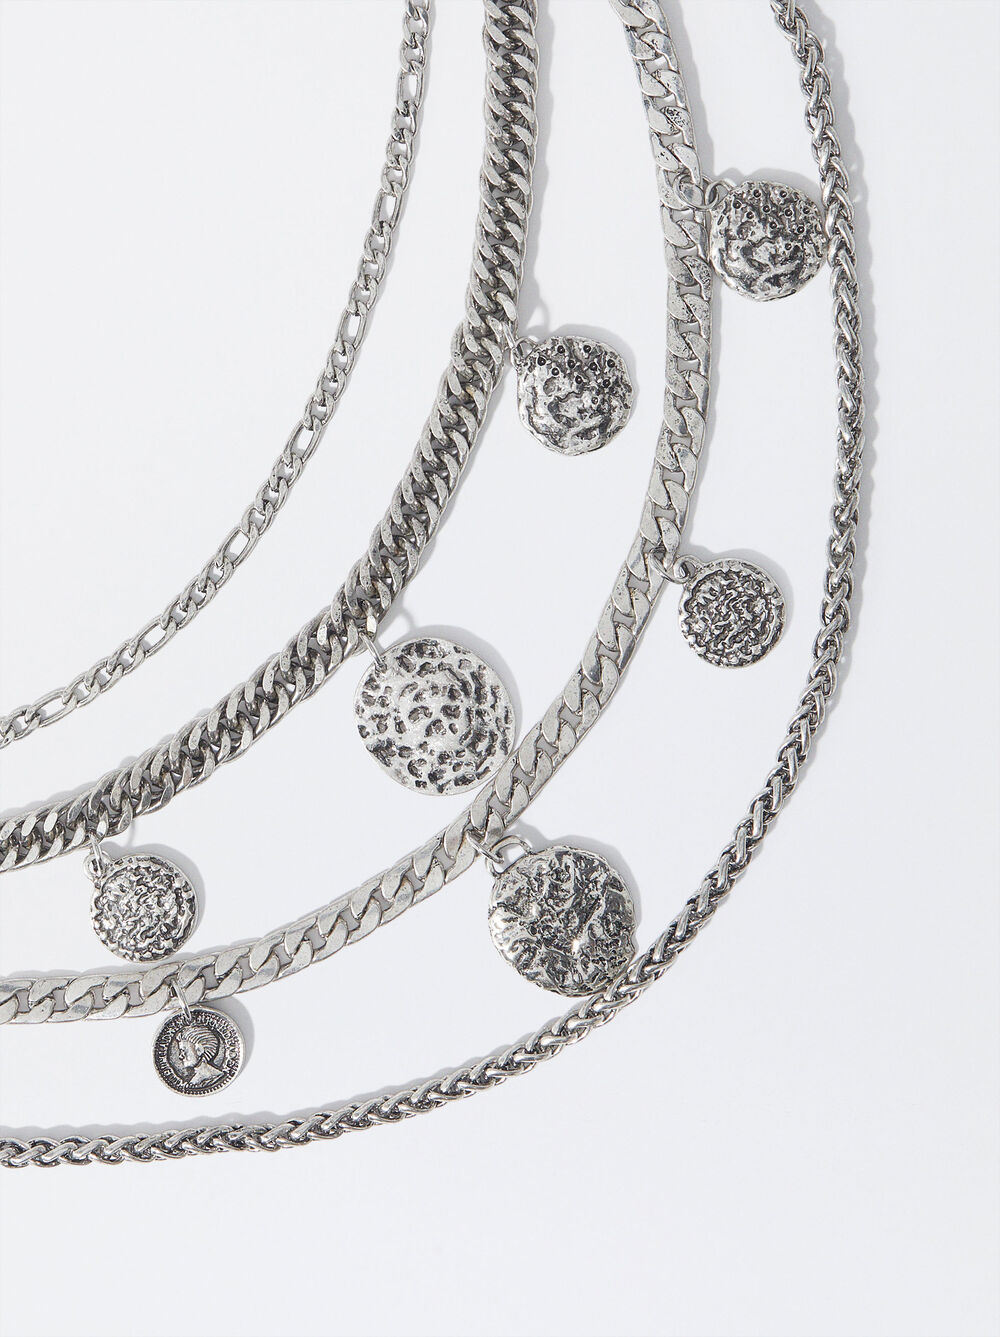 Silver Multi-Chain Necklace